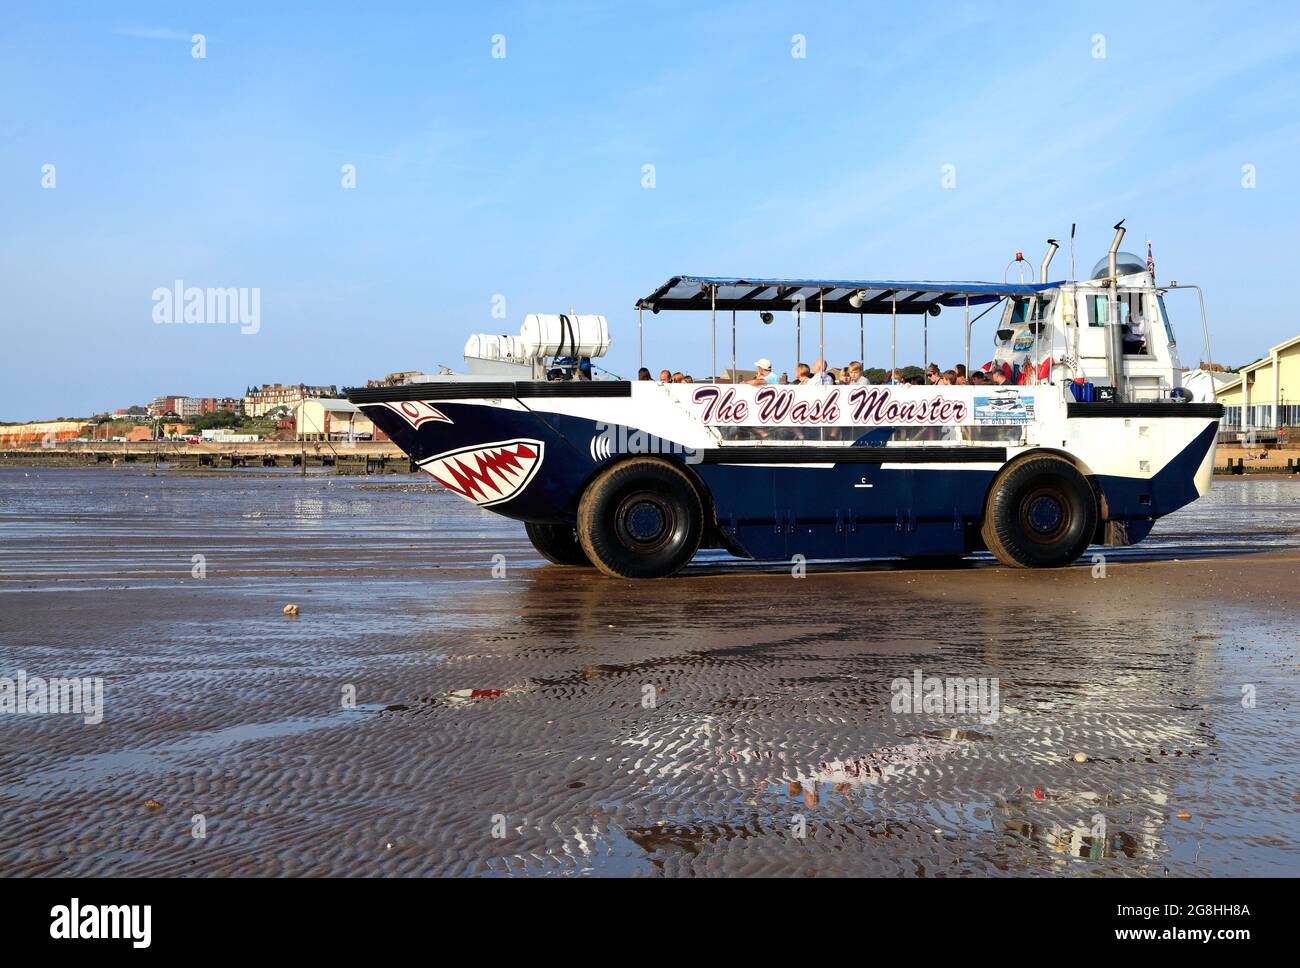 Le monstre de lavage, entrant dans la mer, bateau de plaisance, voyages, passagers, Hunstanton Beach, Norfolk, Angleterre, Royaume-Uni Banque D'Images